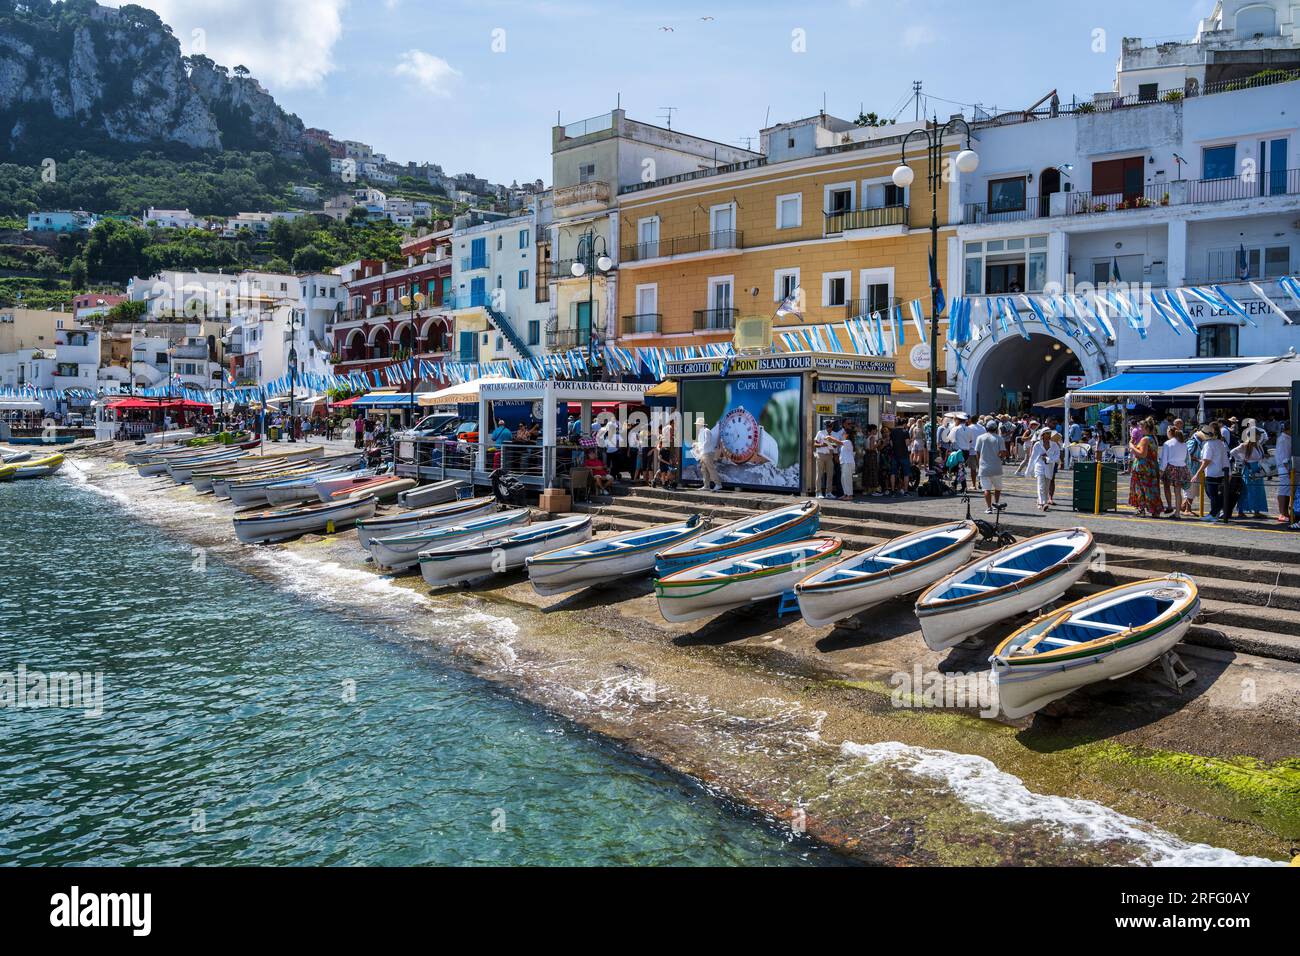 Marina Grande front de mer sur l'île de Capri dans le golfe de Naples au large de la péninsule de Sorrente dans la région Campanie de l'Italie Banque D'Images